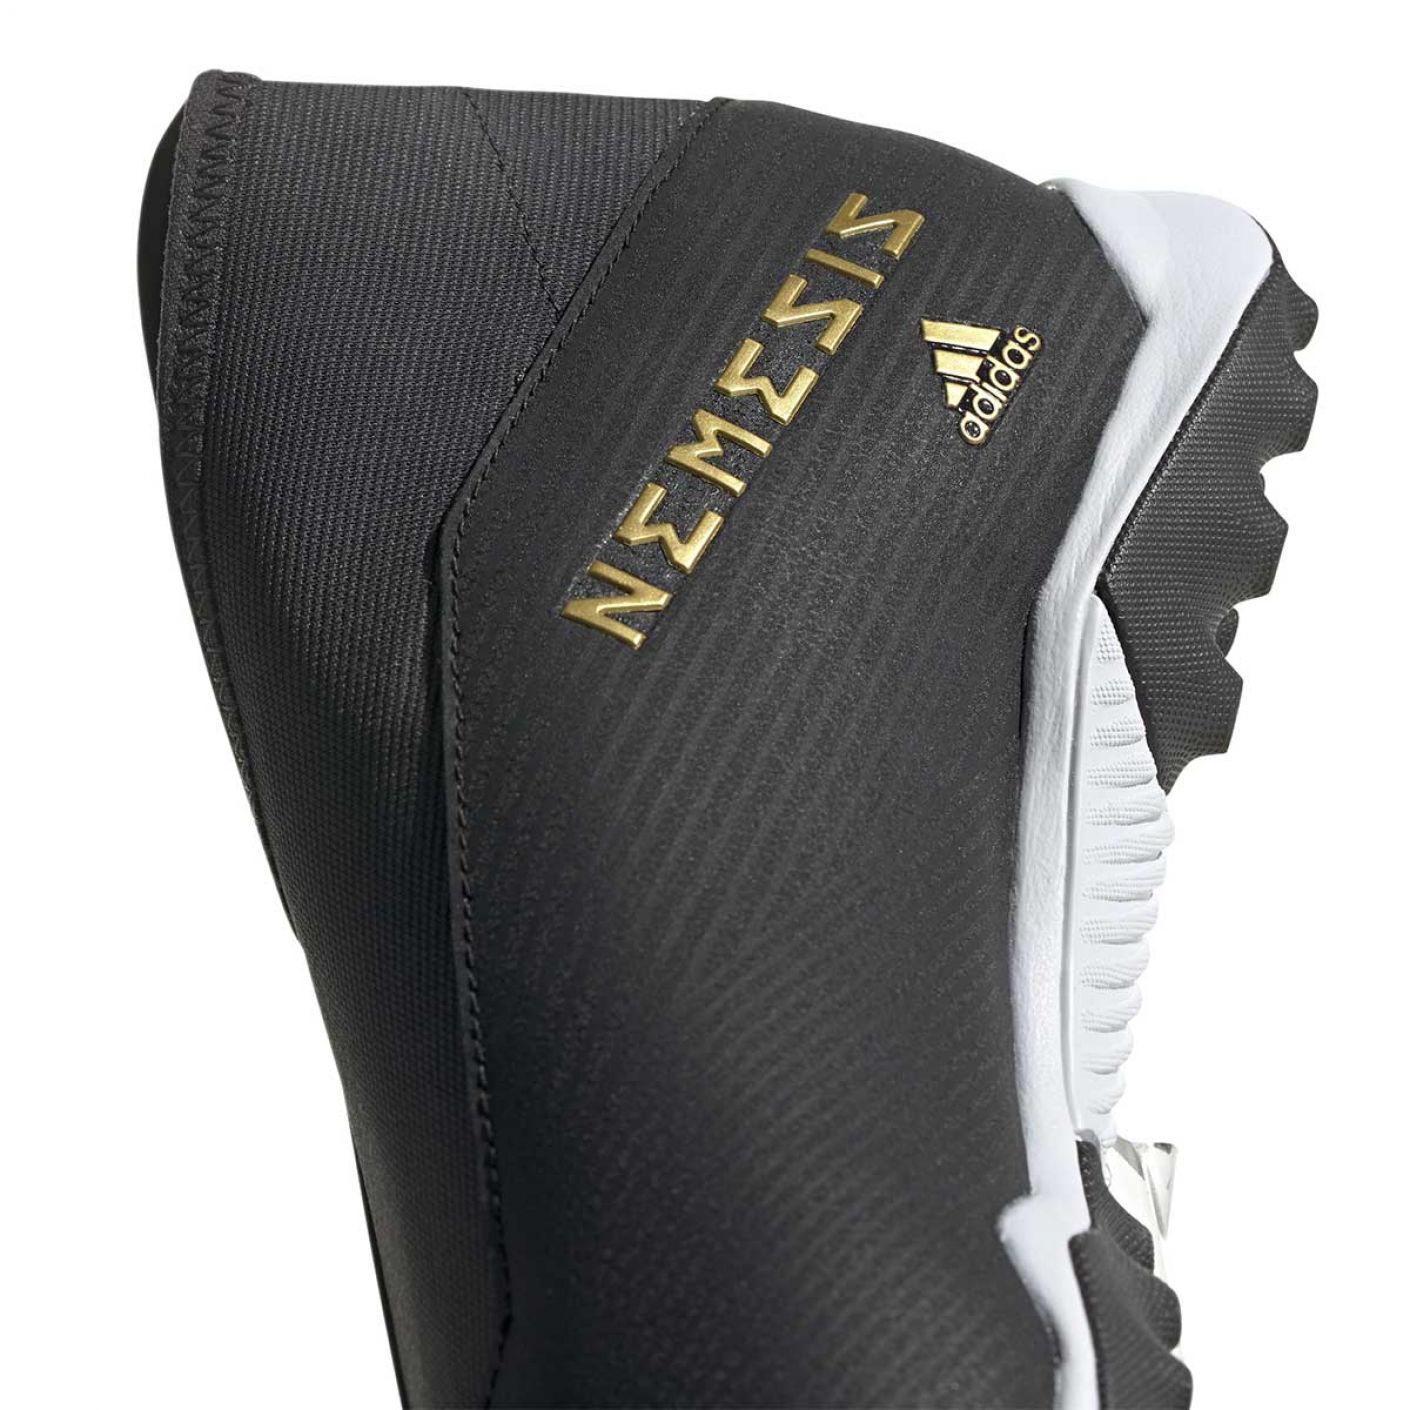 Adidas Nemeziz 19.3 LaceLess Turf Black